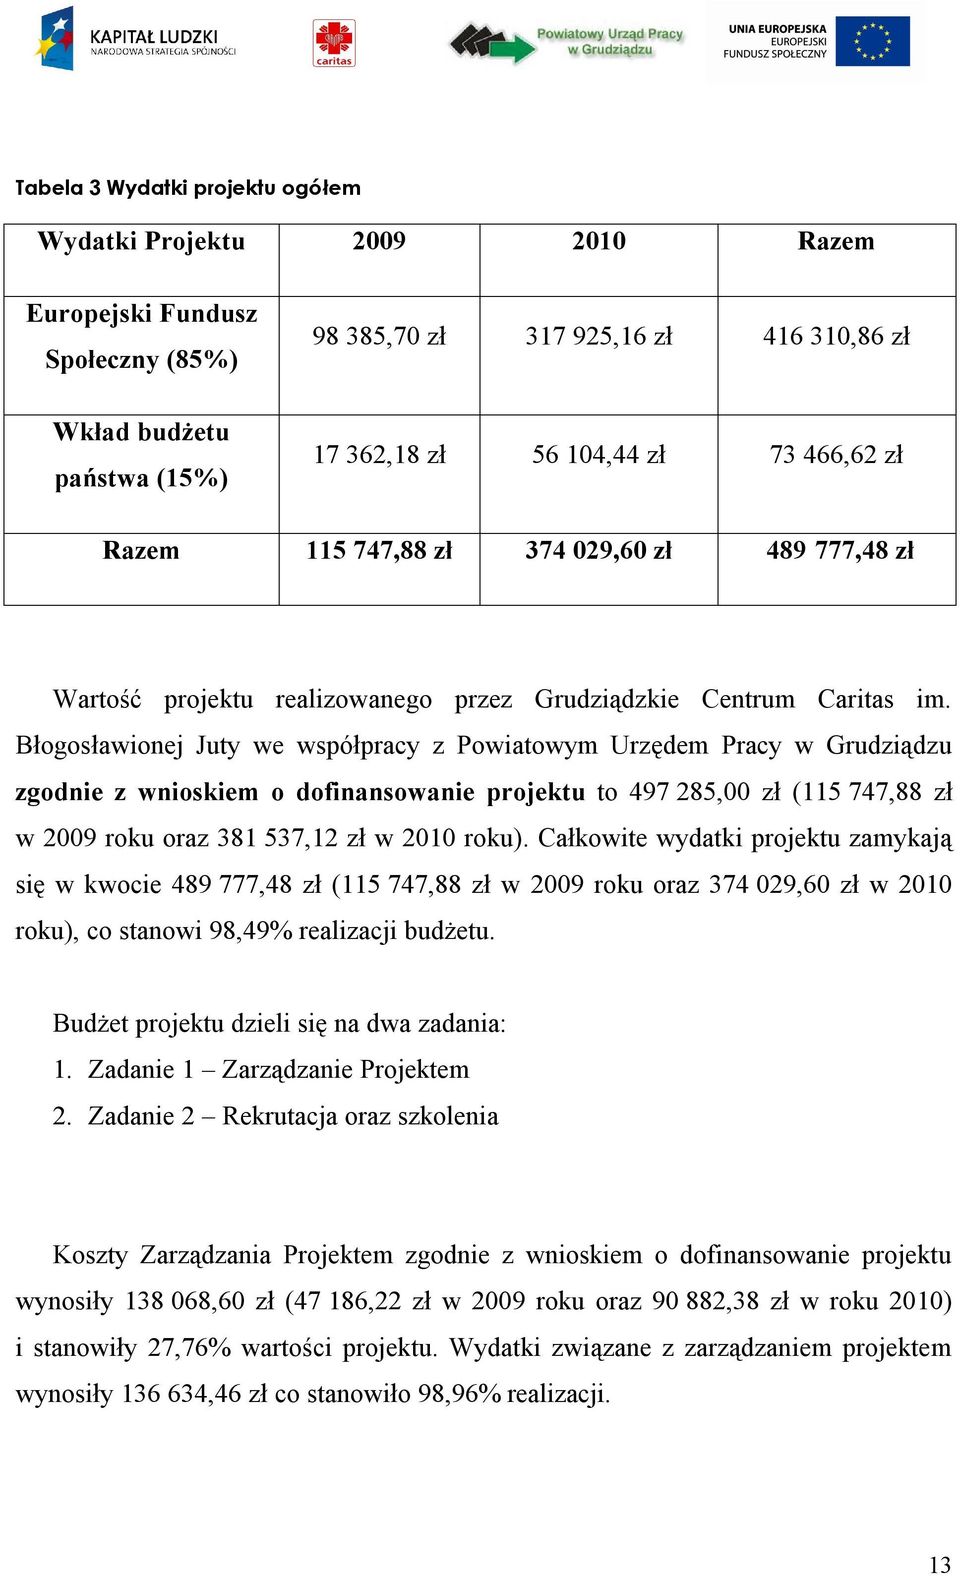 Błogosławionej Juty we współpracy z Powiatowym Urzędem Pracy w Grudziądzu zgodnie z wnioskiem o dofinansowanie projektu to 497 285,00 zł (115 747,88 zł w 2009 roku oraz 381 537,12 zł w 2010 roku).